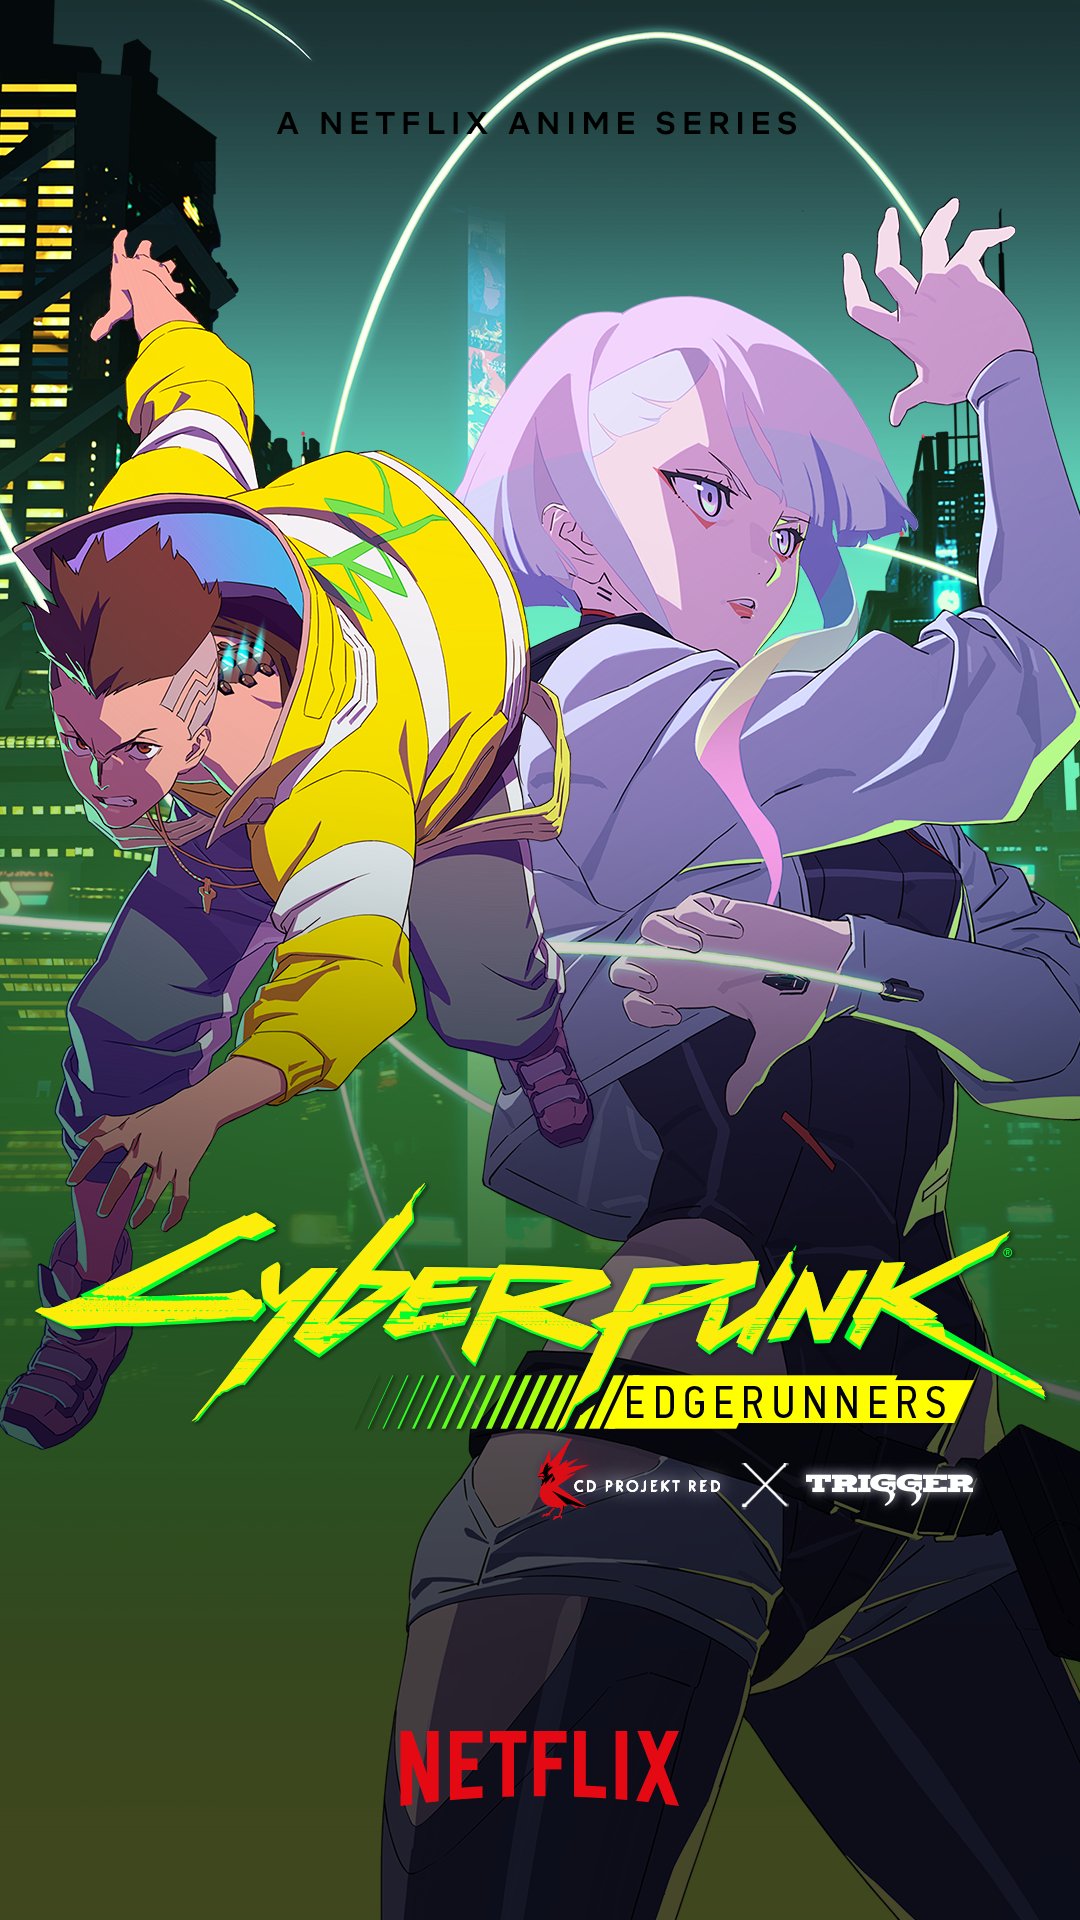 Cyberpunk: Edgerunners for an upgrade, choom! Grab the #Edgerunners wallpaper from